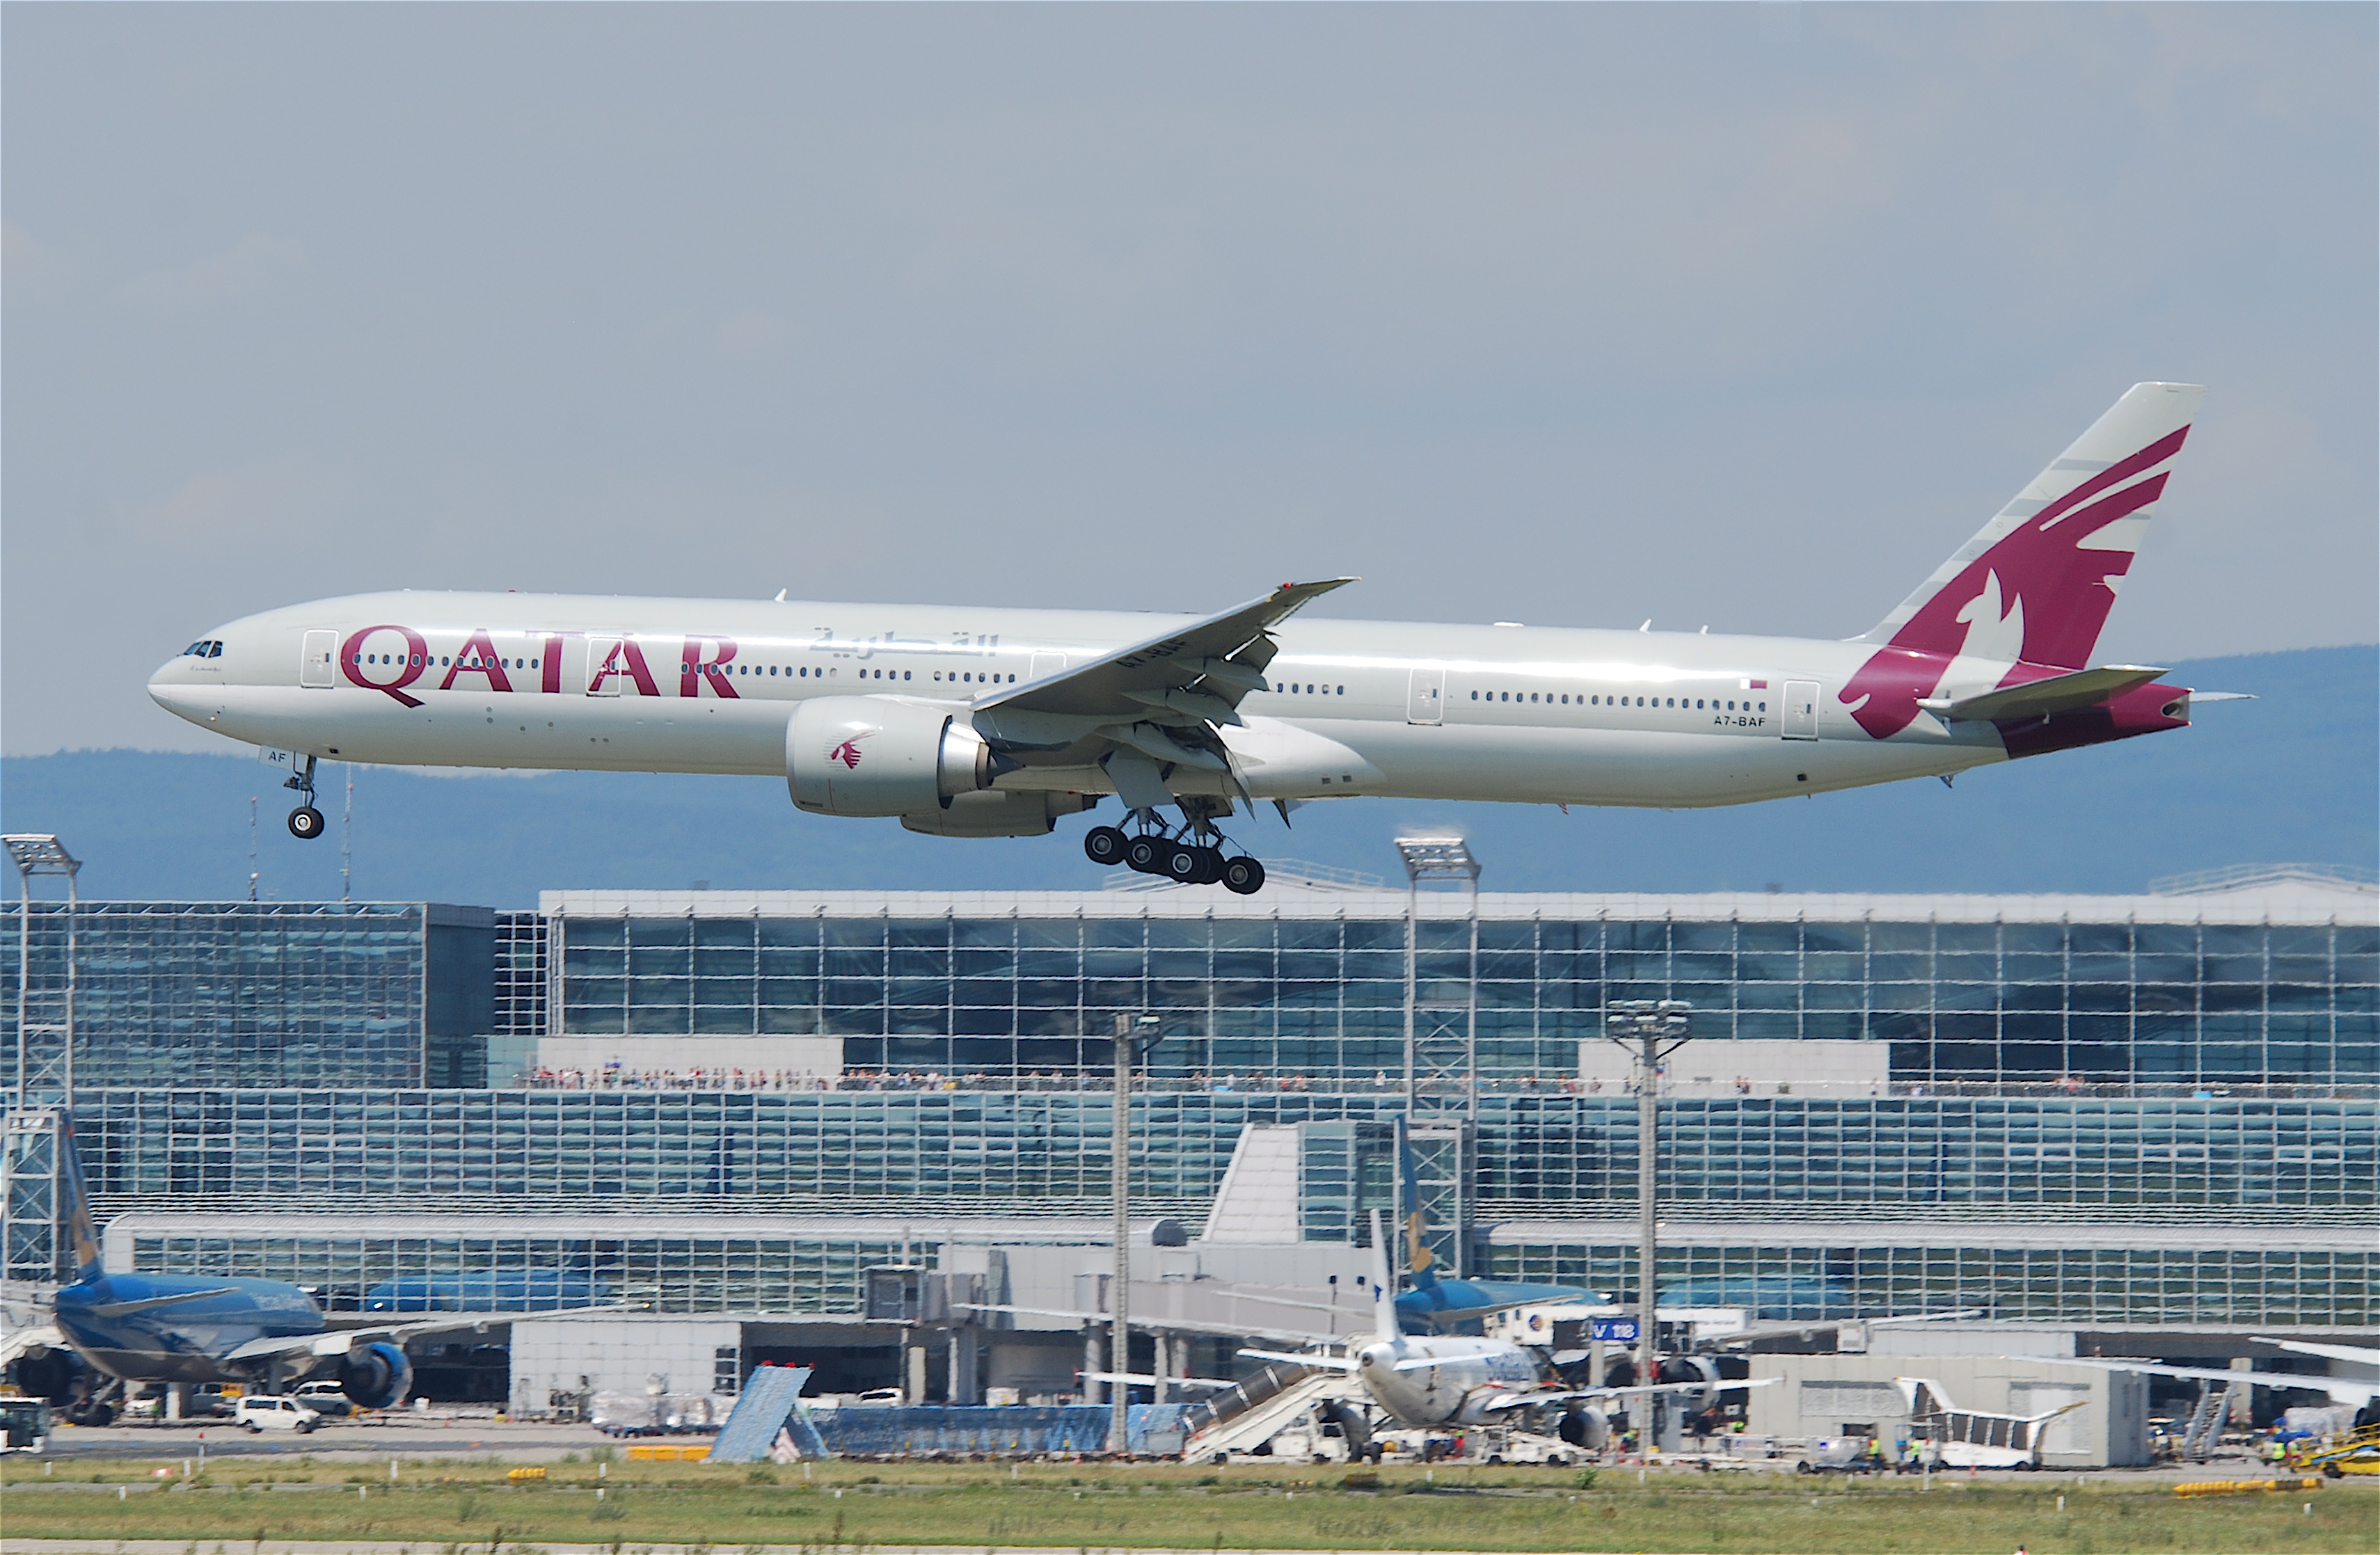 Qatar Airways Boeing 777-300ER; A7-BAF@FRA;16.07.2011 609gu (6190539992)